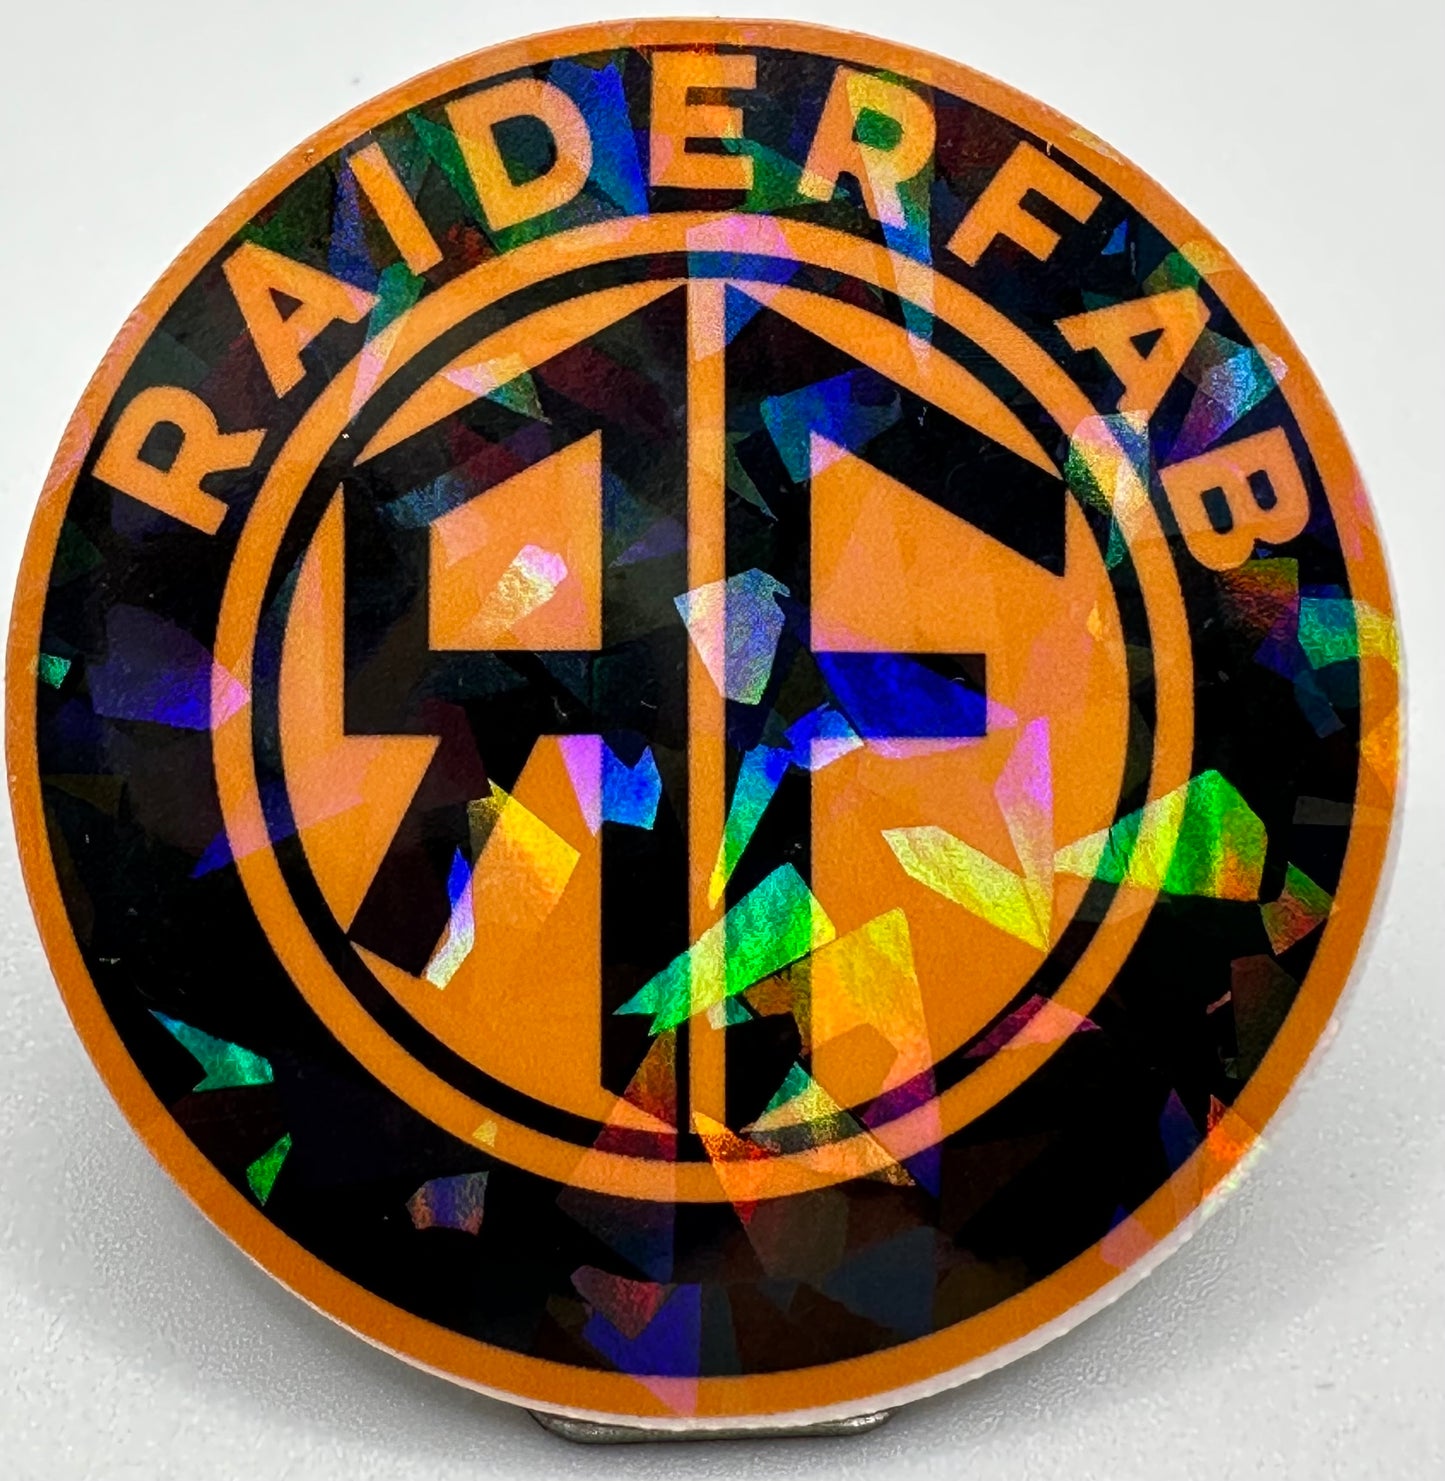 RaiderFab Decals!